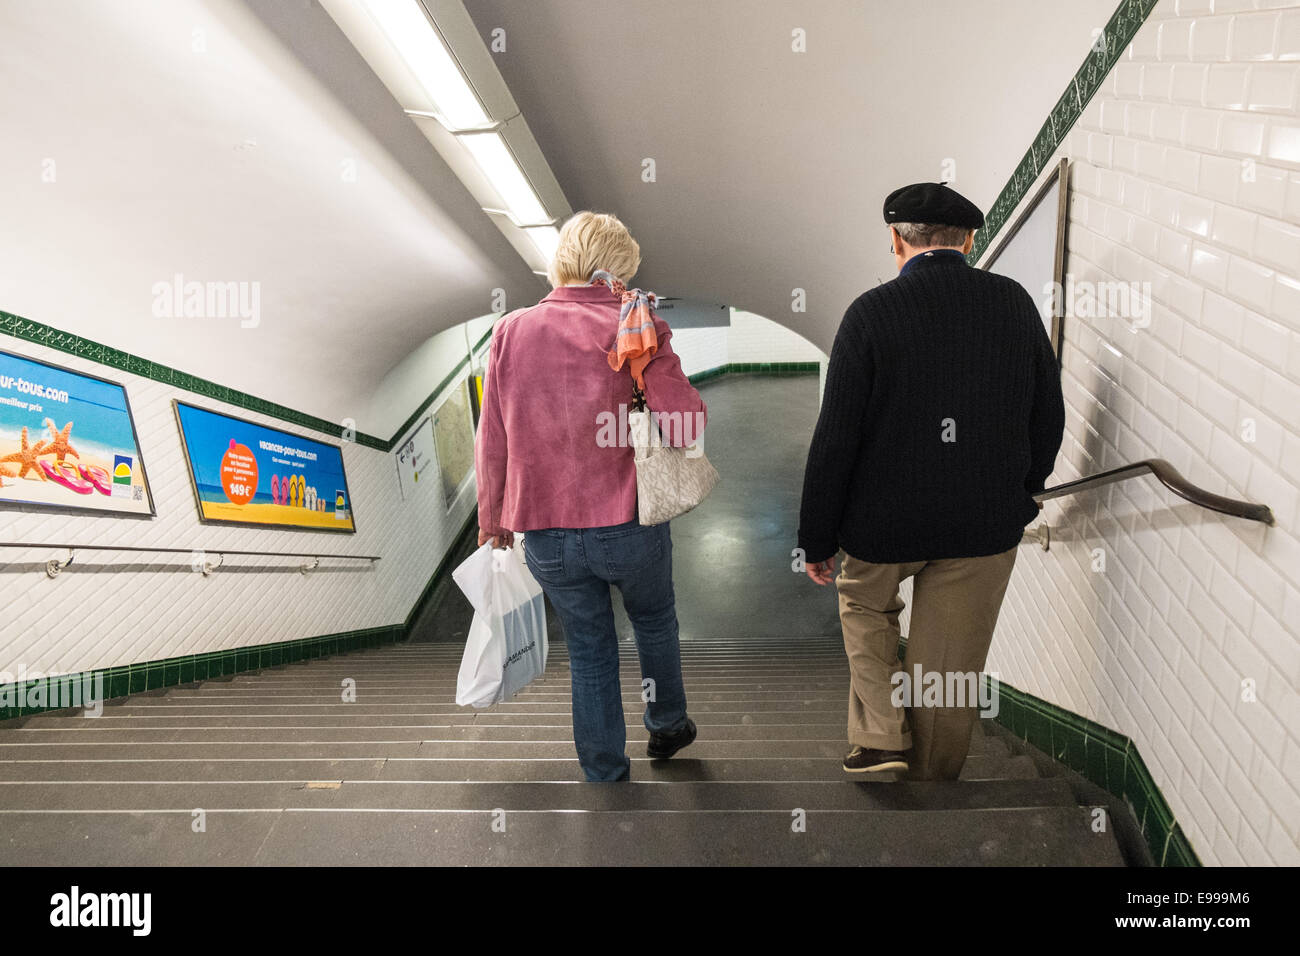 Le français,homme,beret, métro, Paris Banque D'Images